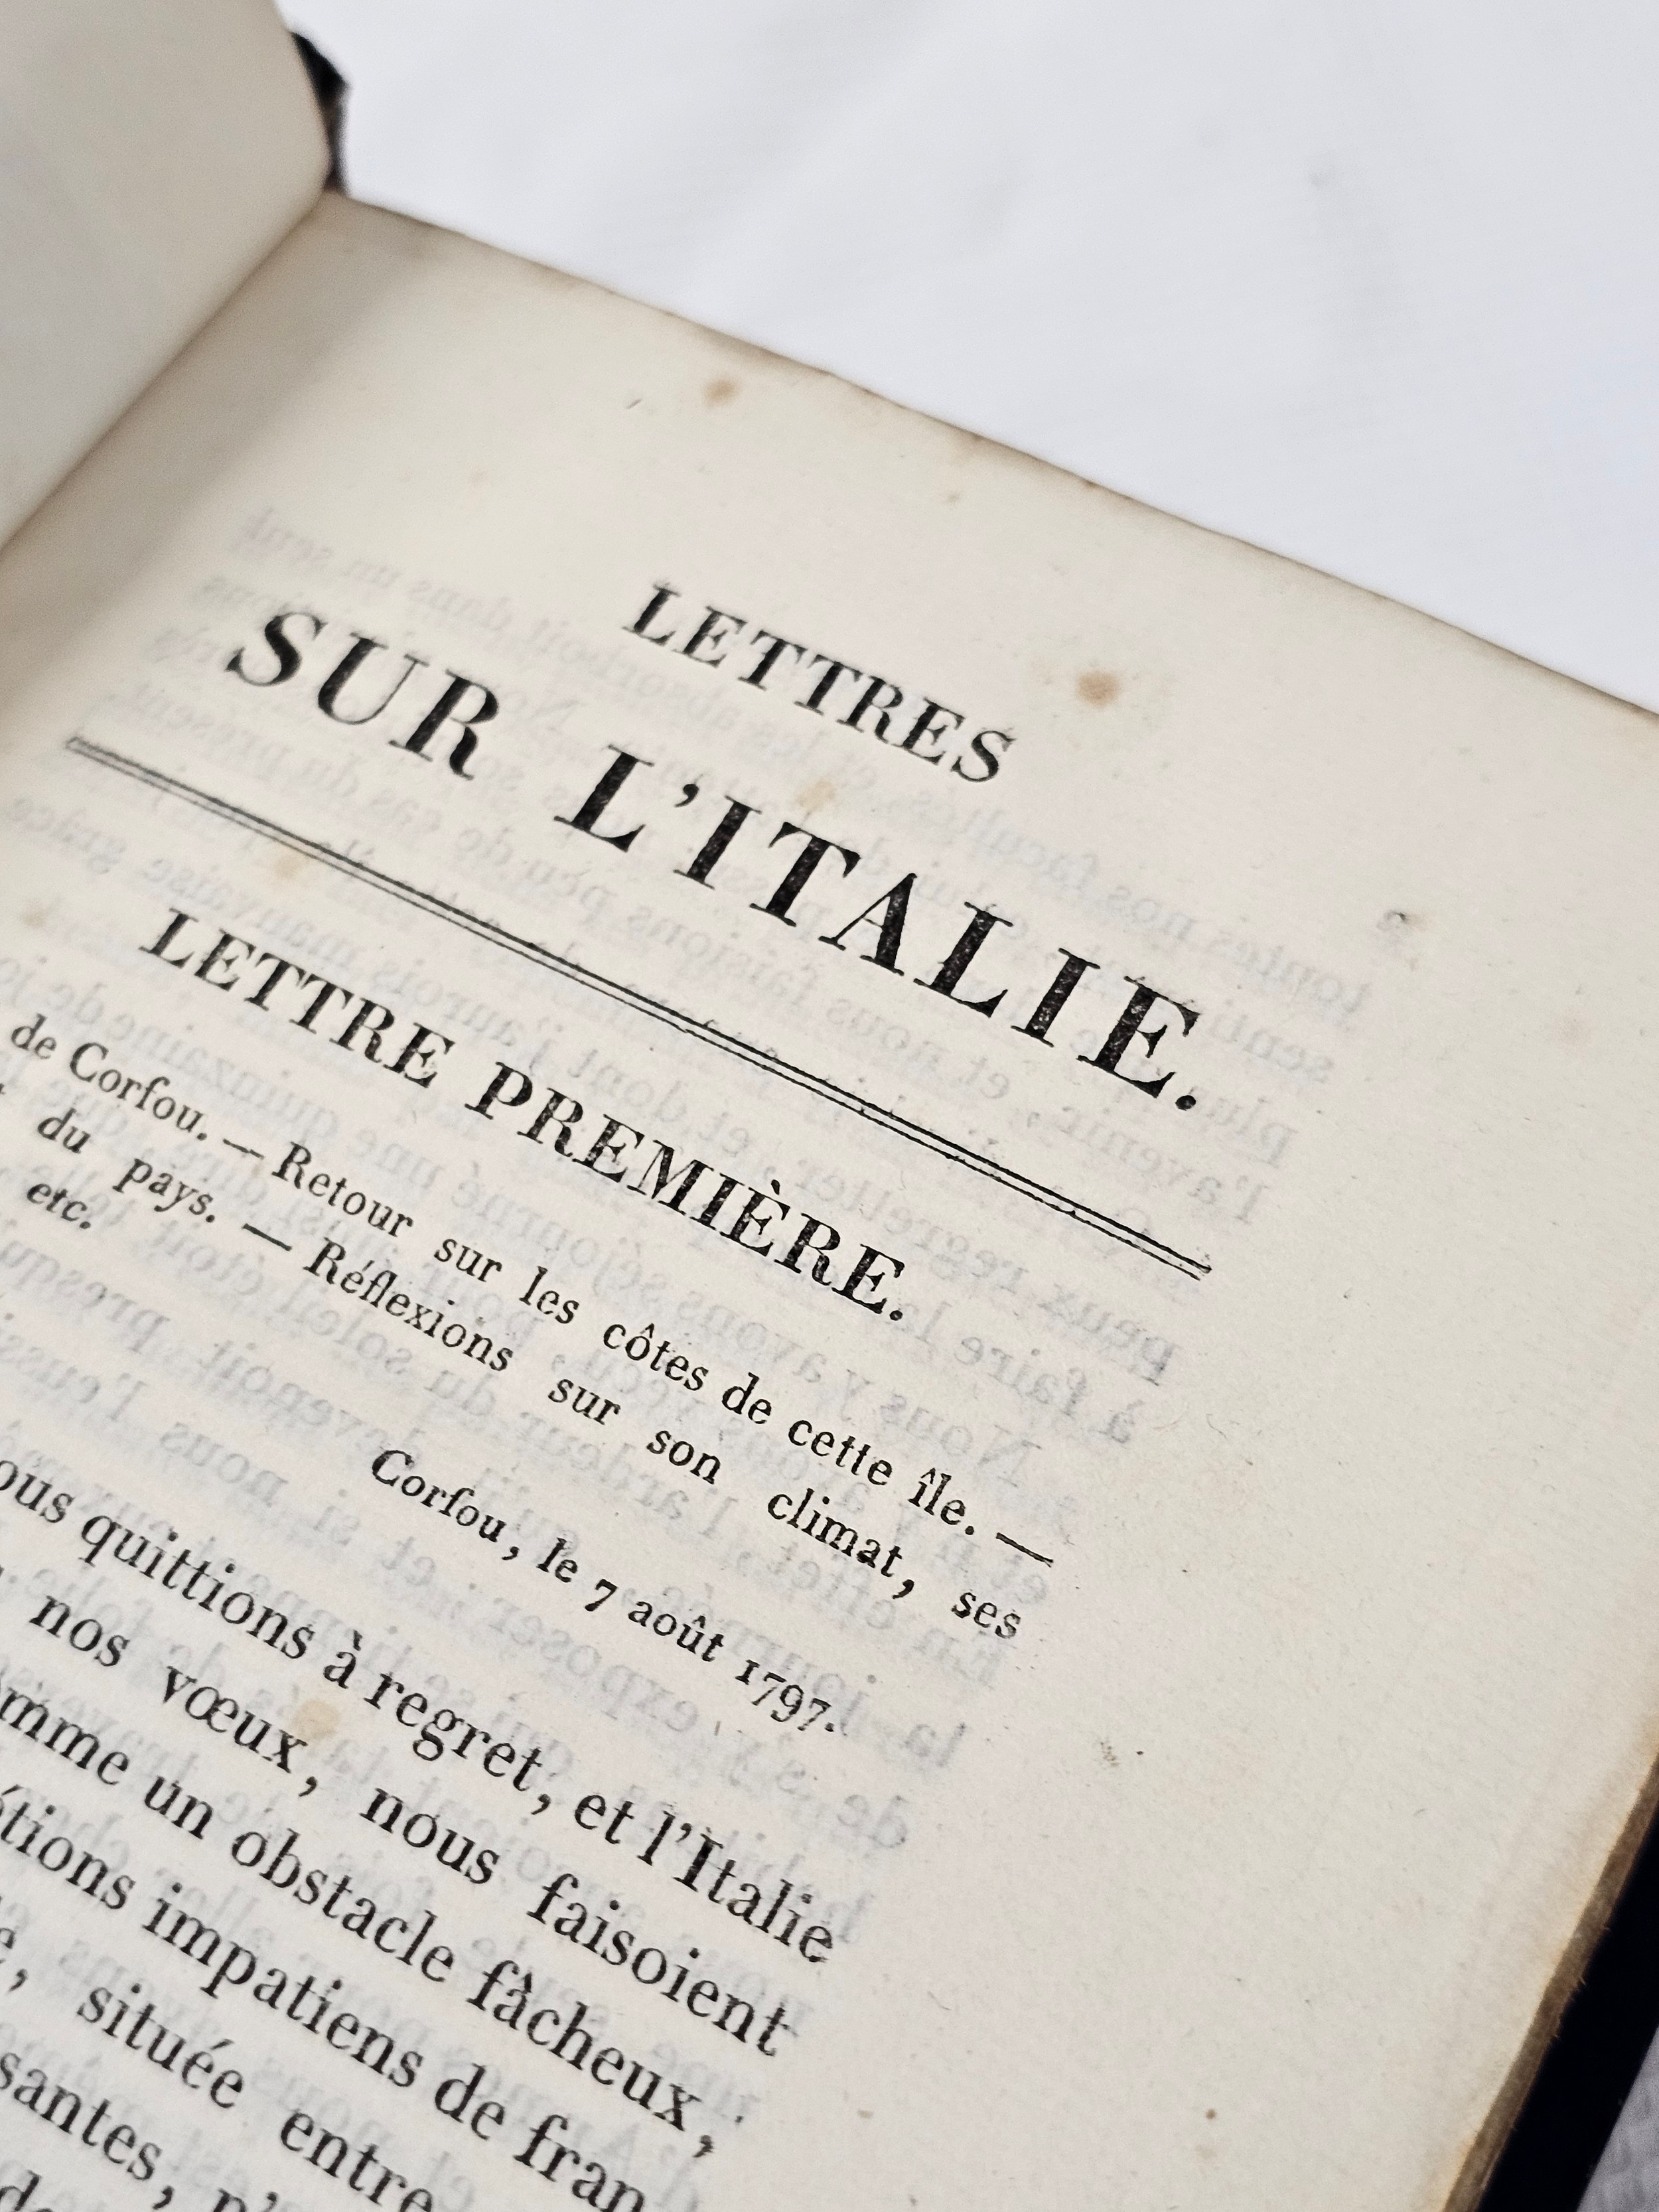 Castellan, A.L. Lettres Sur l'Italie, l'Hellespont et Constantinople. 1819. Published Paris, chez A. - Image 7 of 7